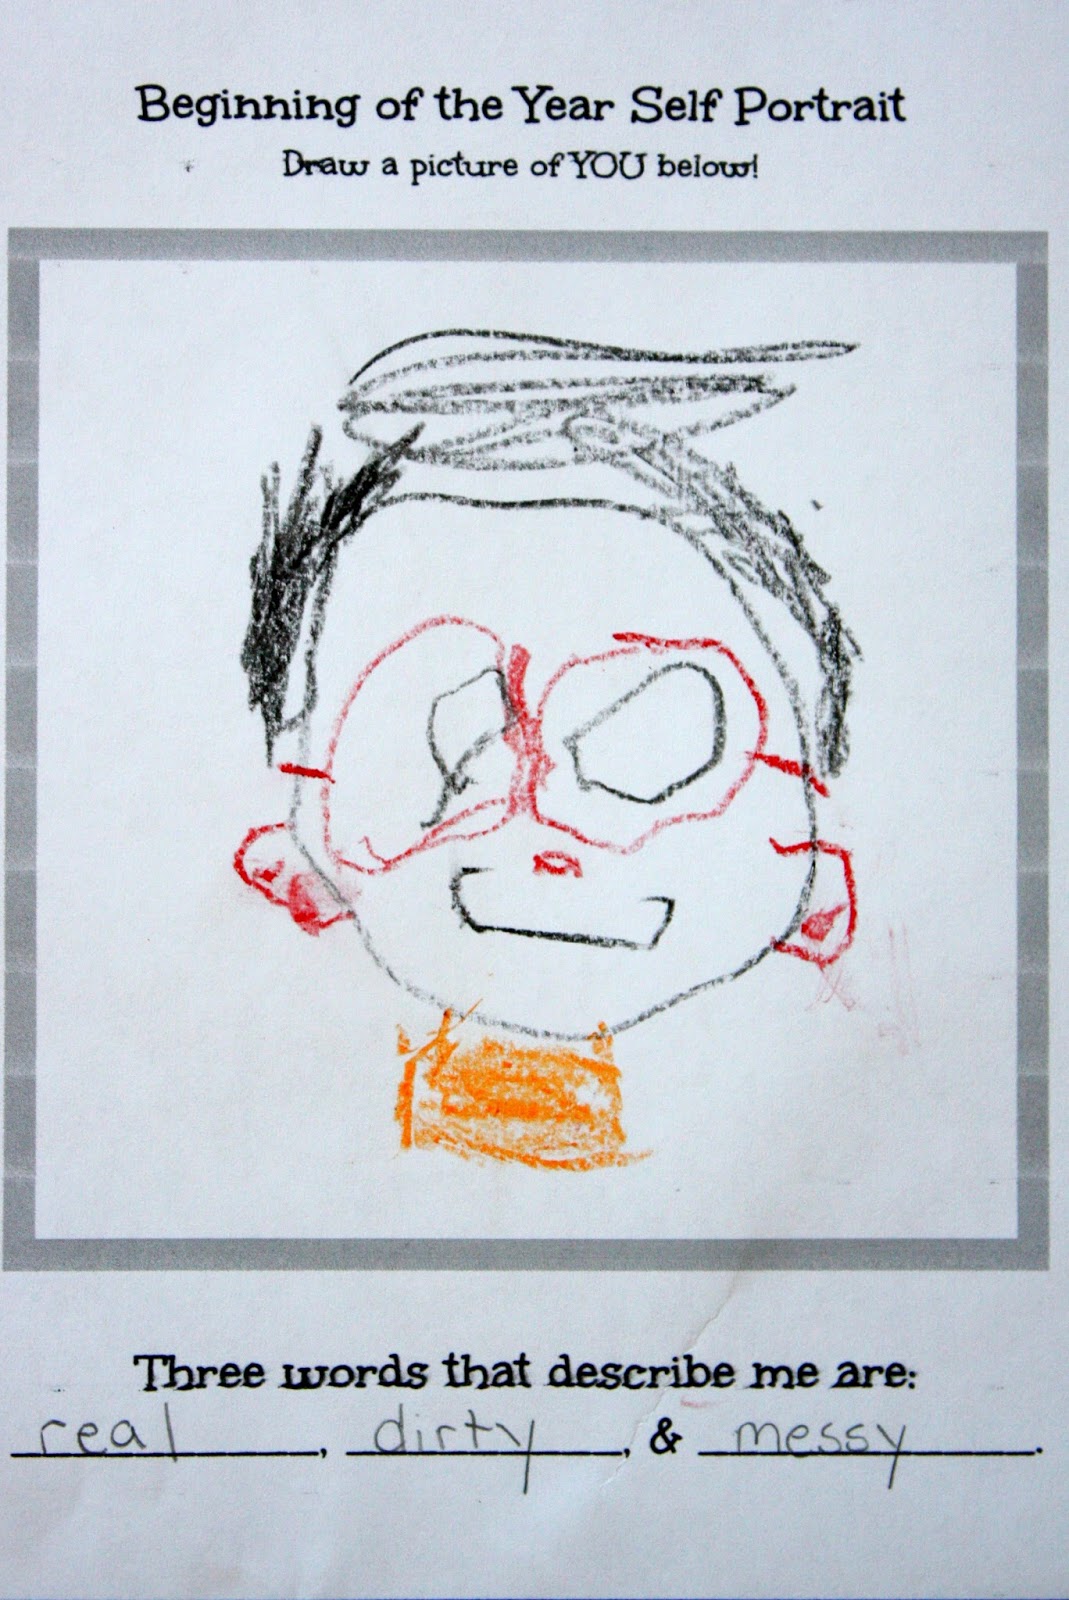 Self Portrait of a 4 year old boy